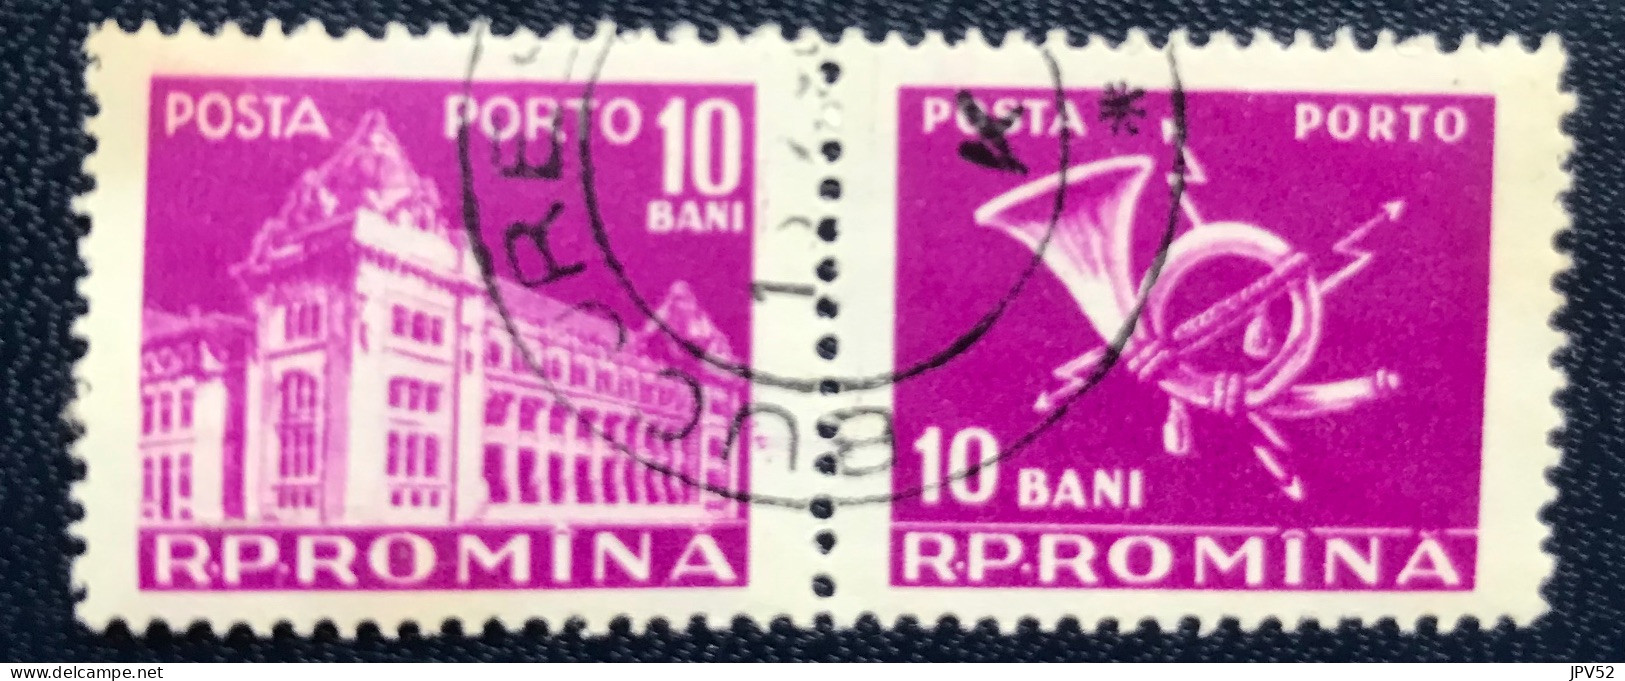 Romana - Roemenië - C14/54 - 1957 - (°)used - Michel 103 - Postkantoor & Posthoorn & Bliksem - Postage Due